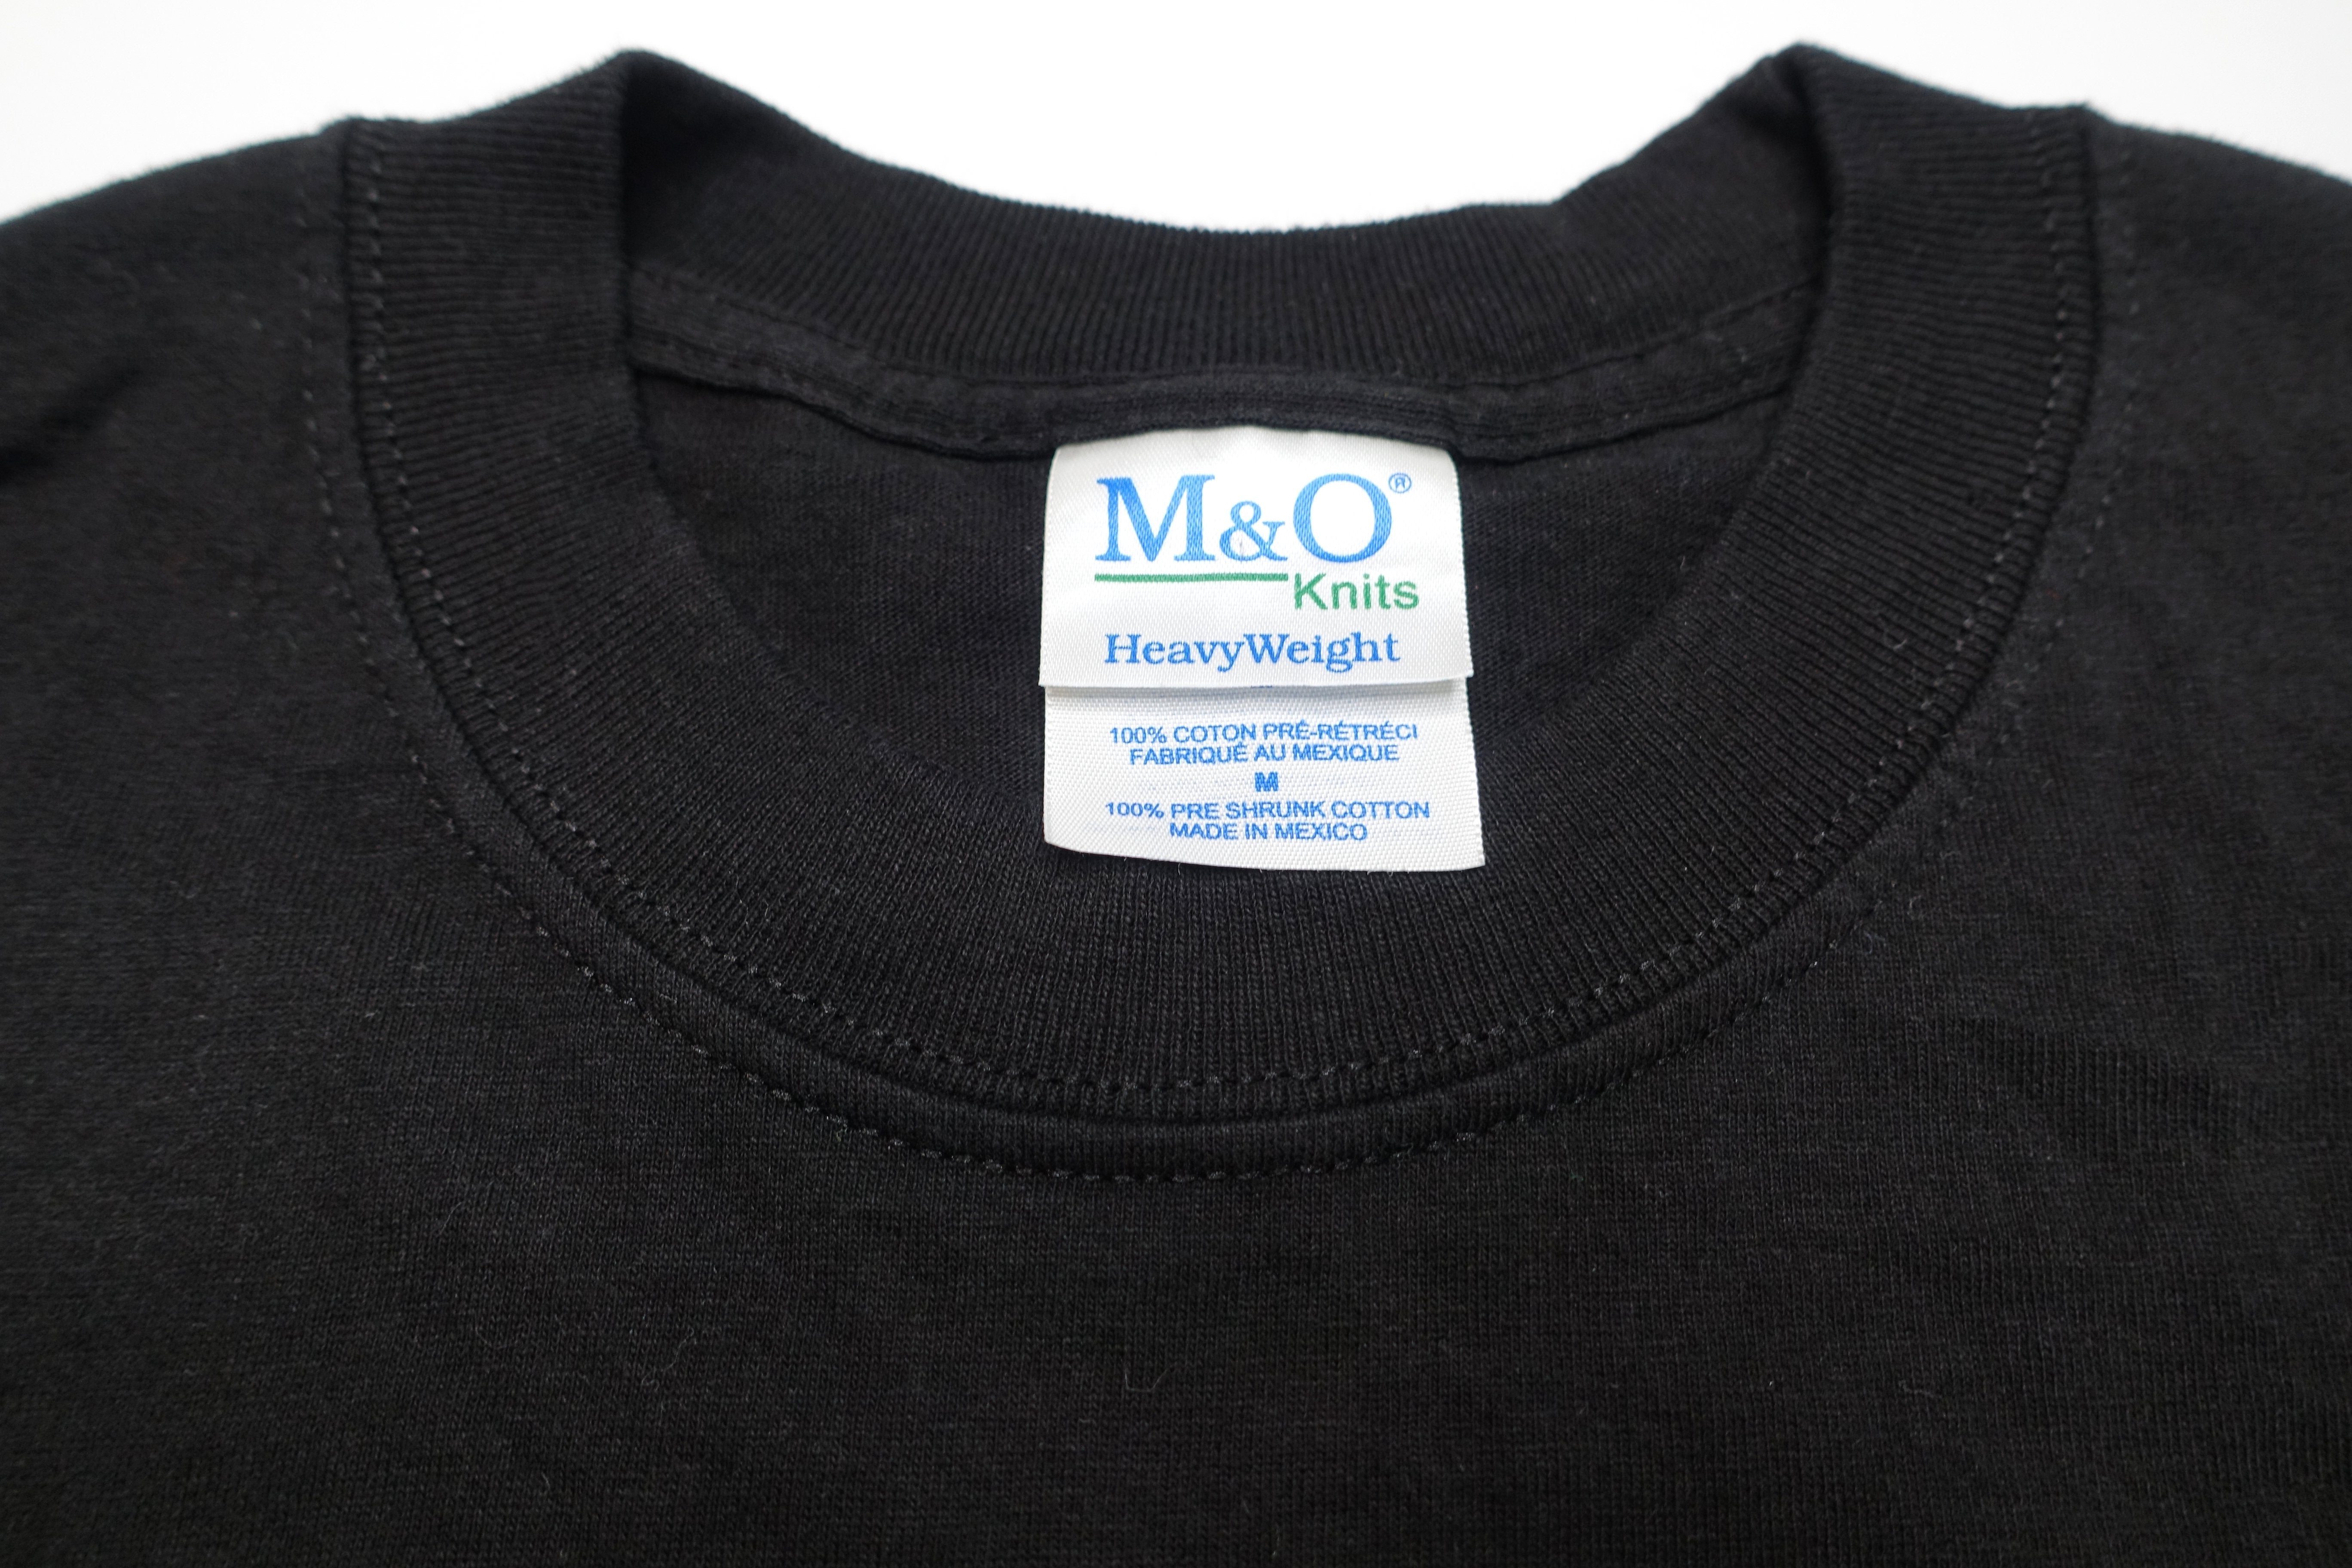 MxPx ‎– Let's Rock 2006 Tour Shirt Size Medium